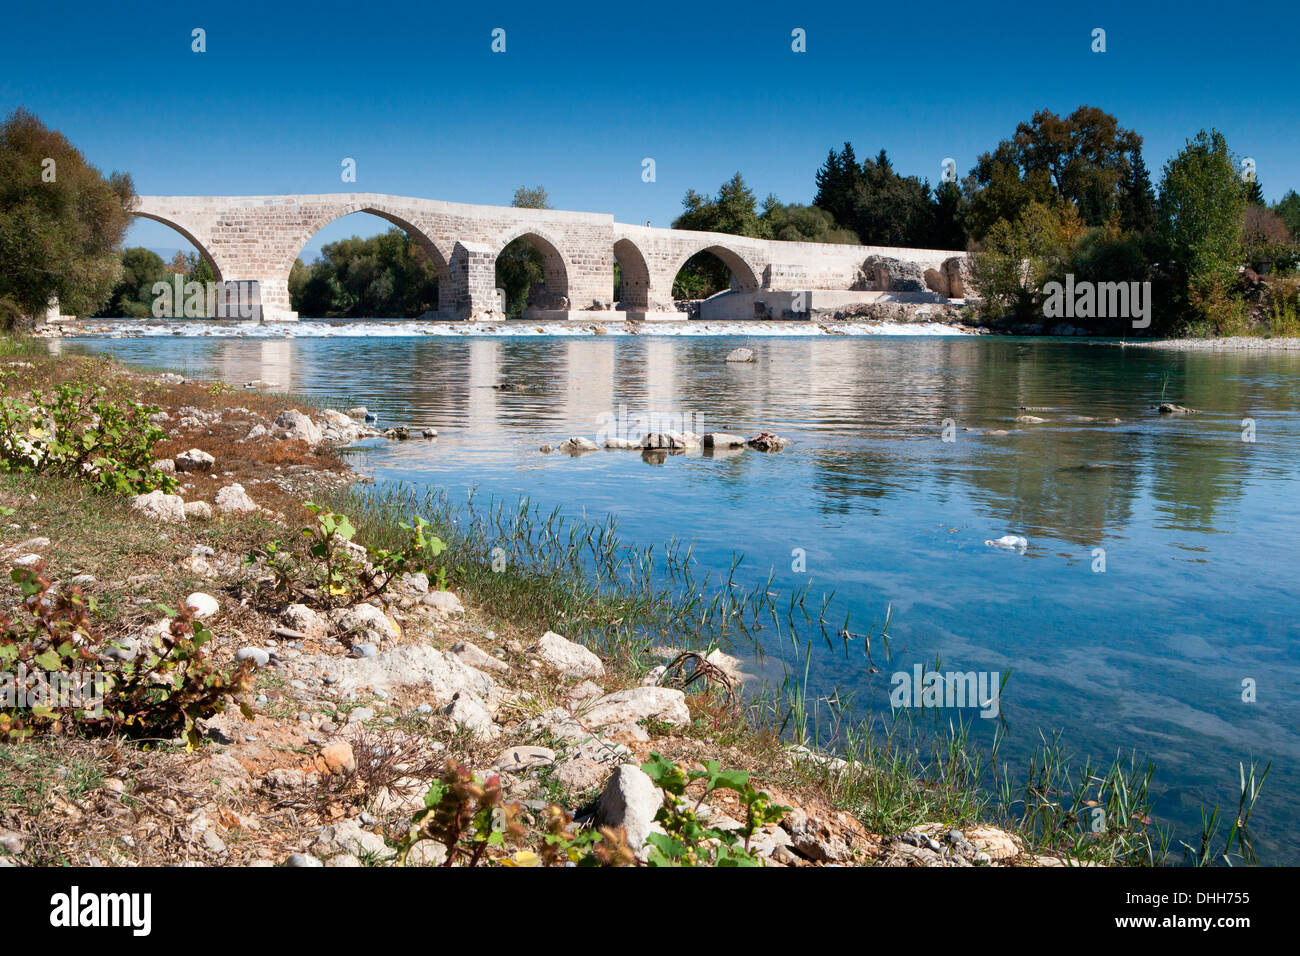 Pont médiéval restauré datant de l'Empire Seljuq près d'Aspendos dans le sud de la Turquie. Banque D'Images